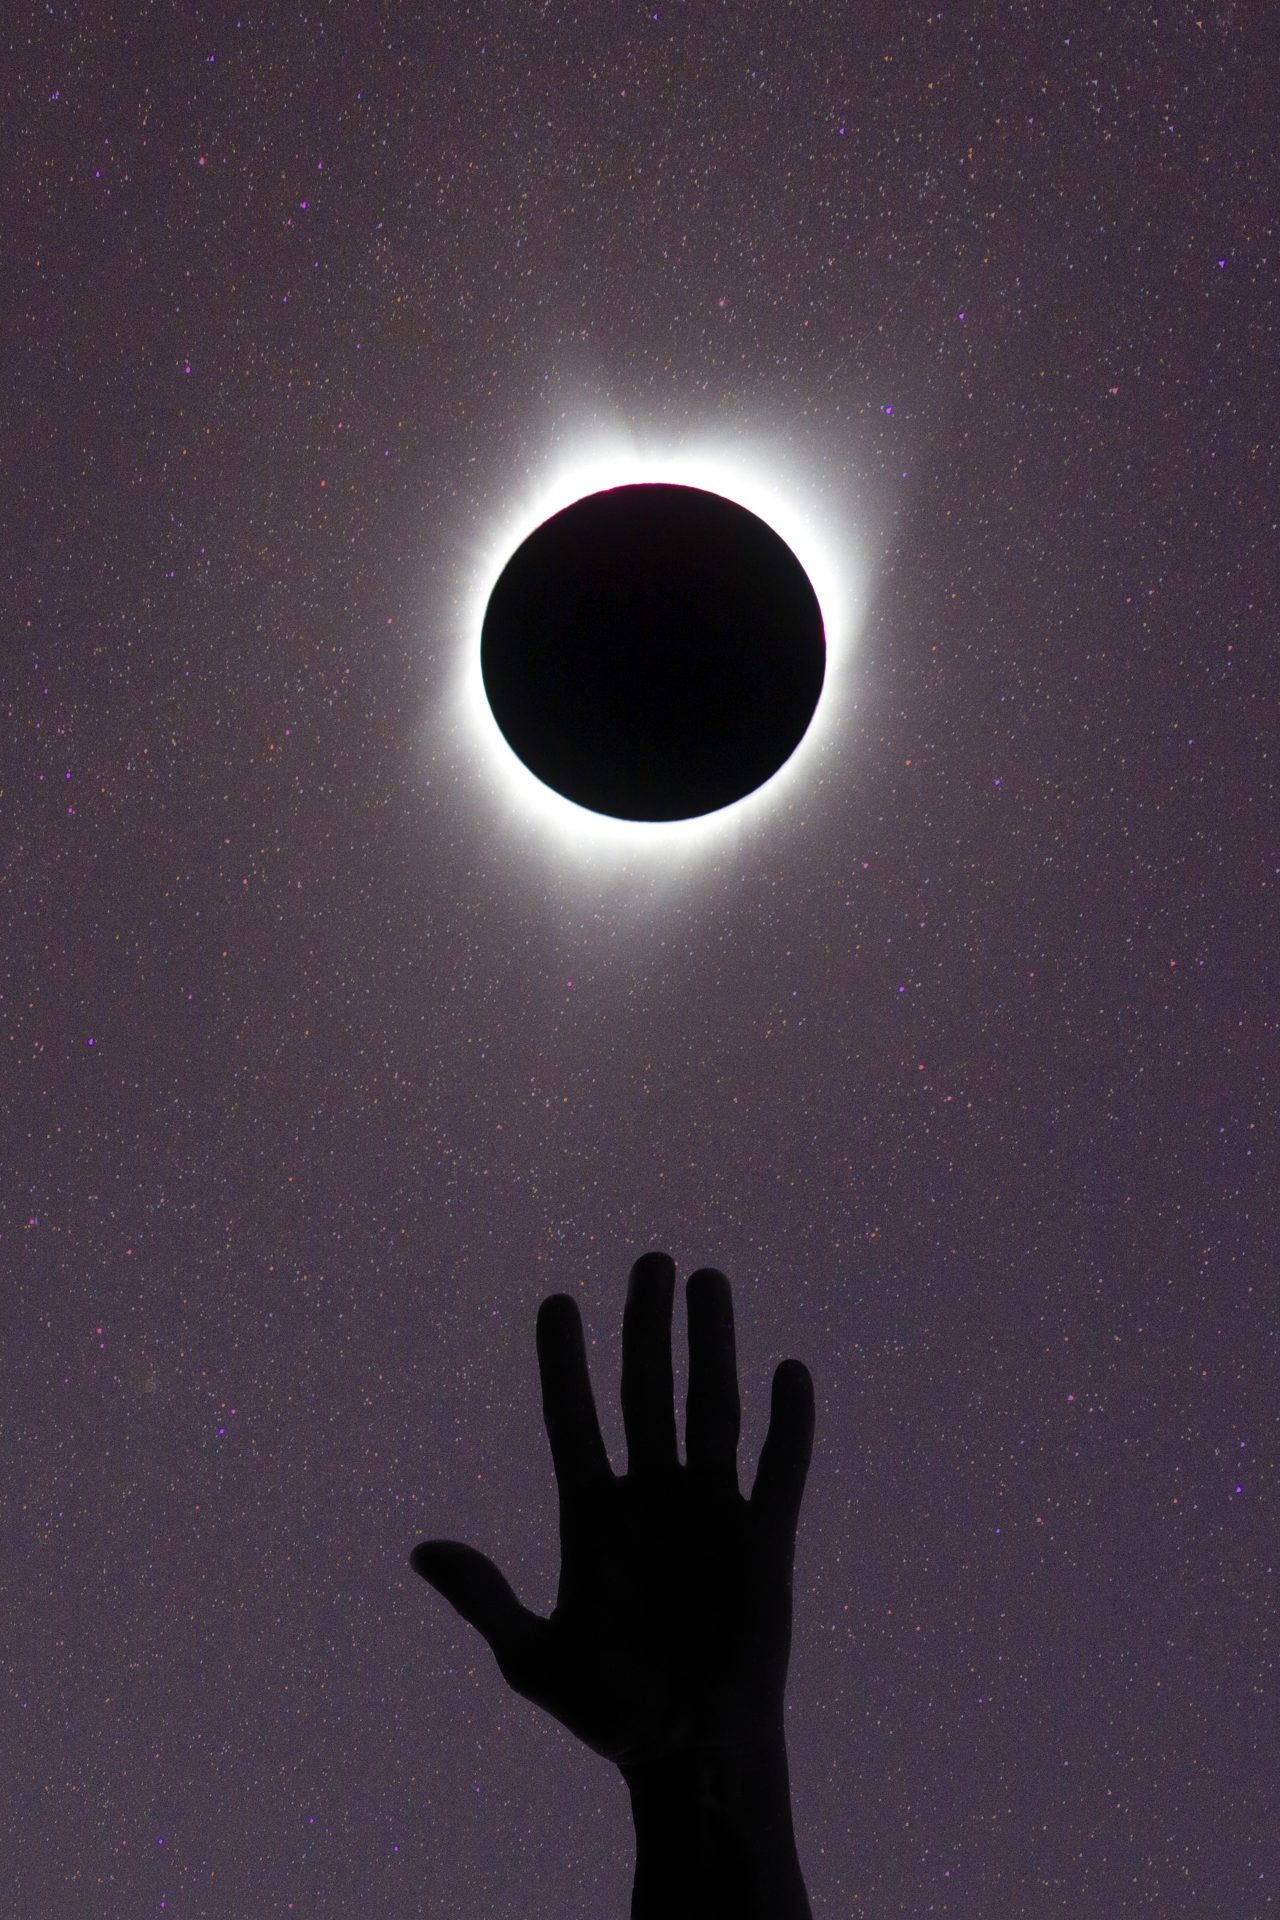 El eclipse proporcionaba las condiciones necesarias para el experimento